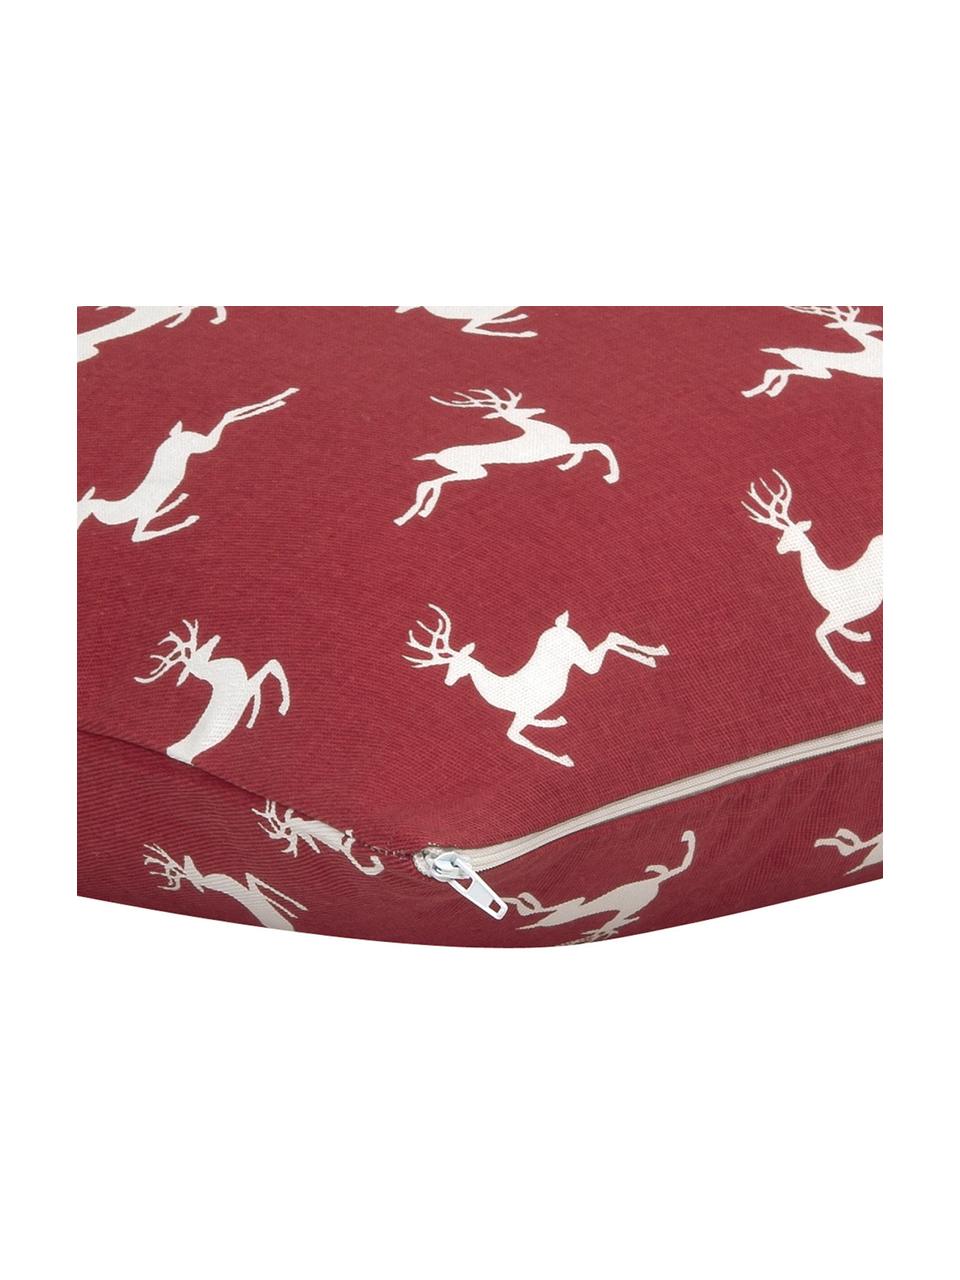 Kissenhülle Deers in Rot/Weiß, 100% Baumwolle, Panamabindung, Dunkelrot, Ecru, 40 x 40 cm